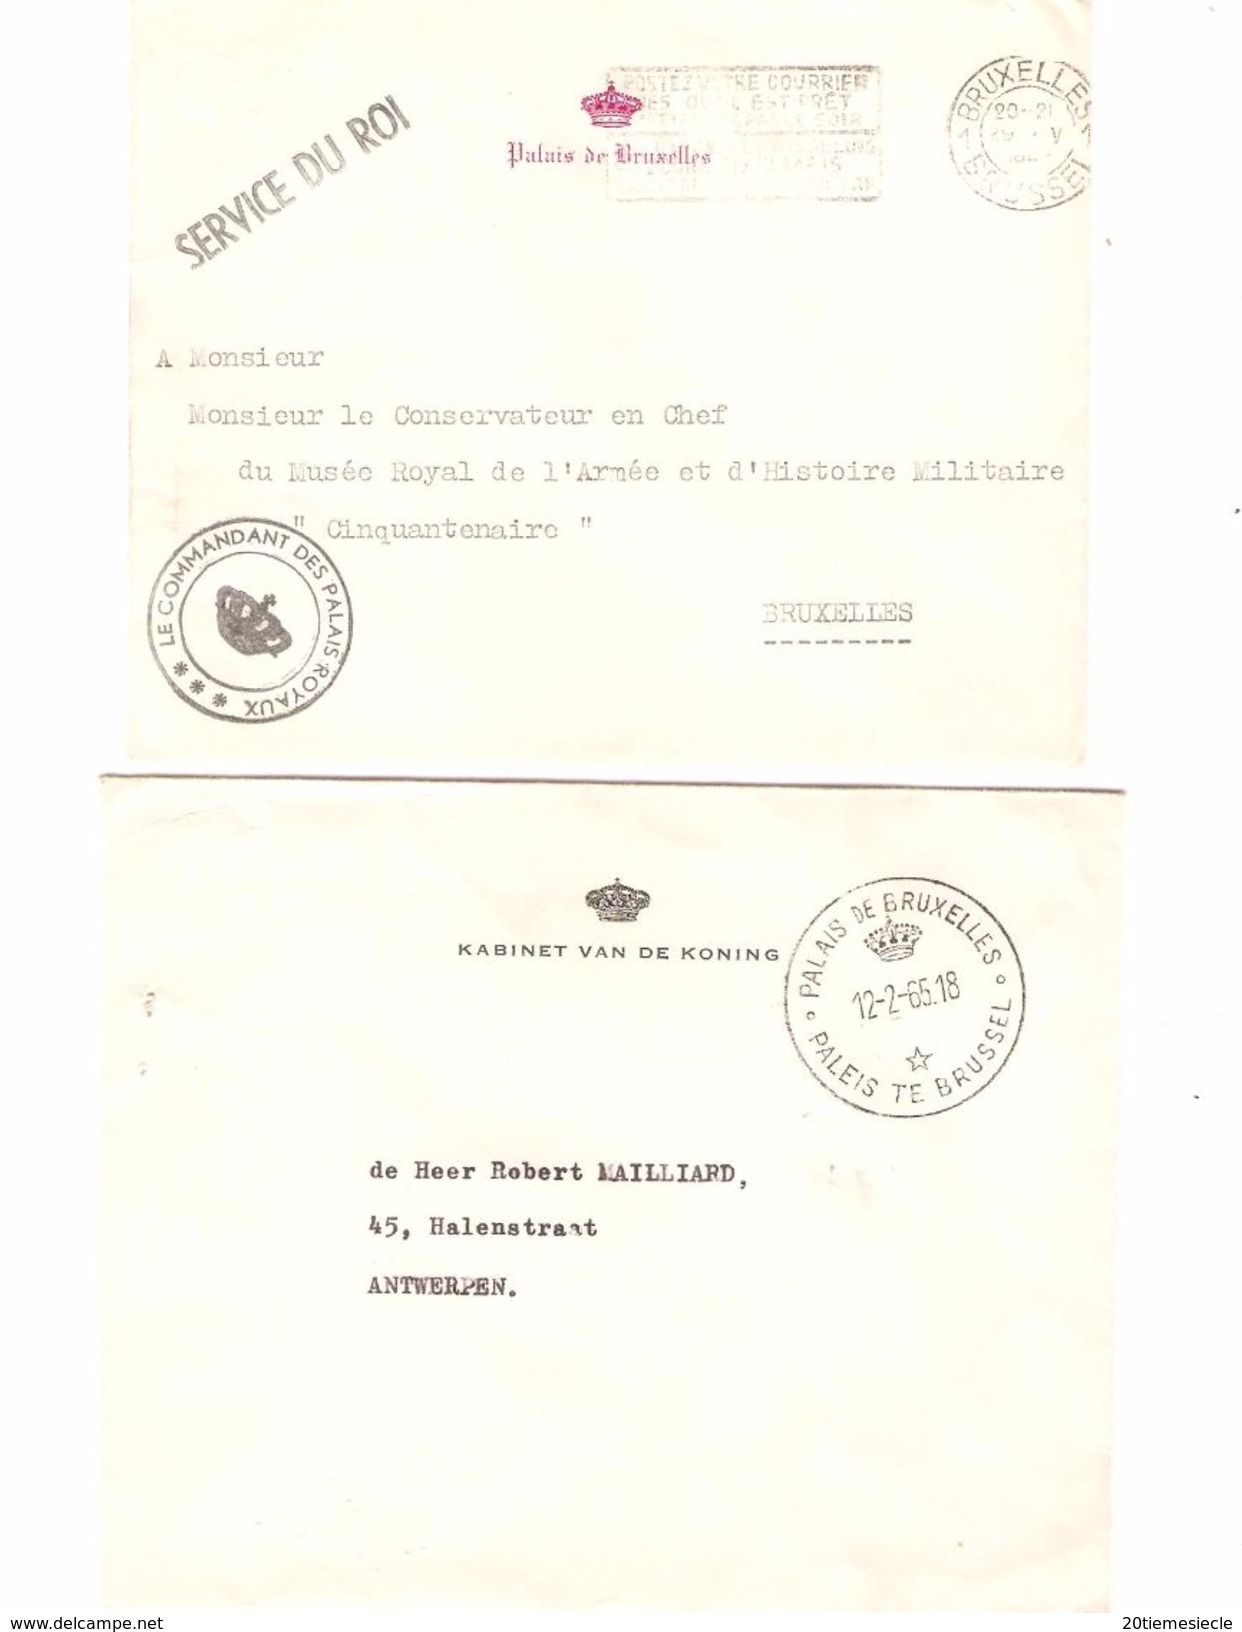 2 Lettres En Franchise Kaninet Van De Koning-Palais De Bruxelles 12/2/65 & BXL AP1126 - Franchise